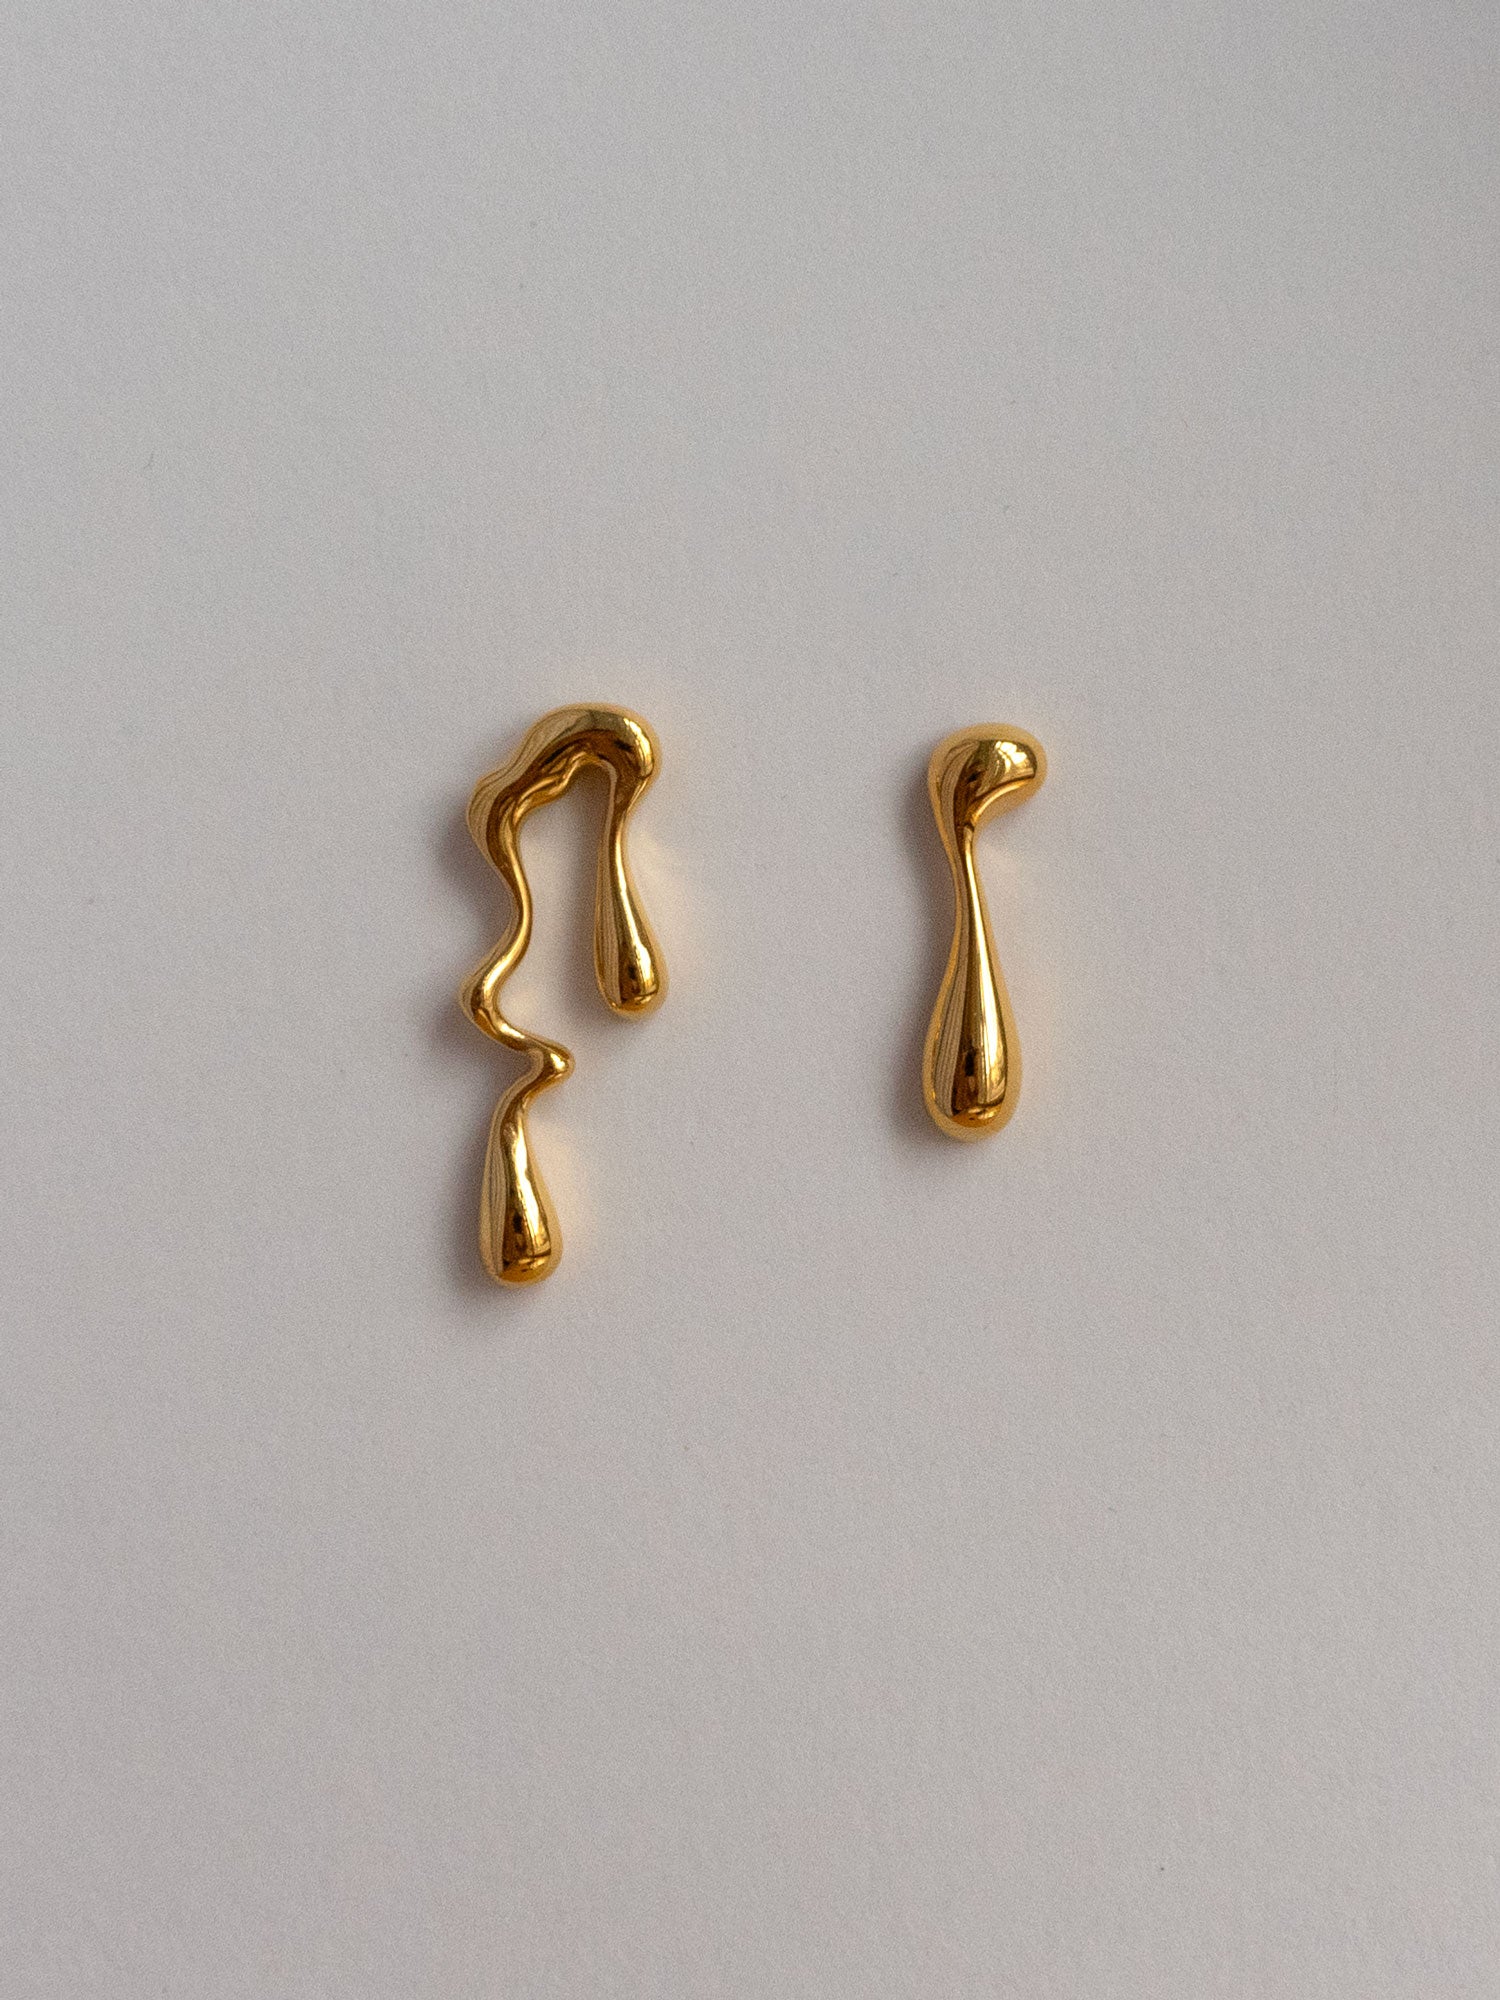 asym earrings